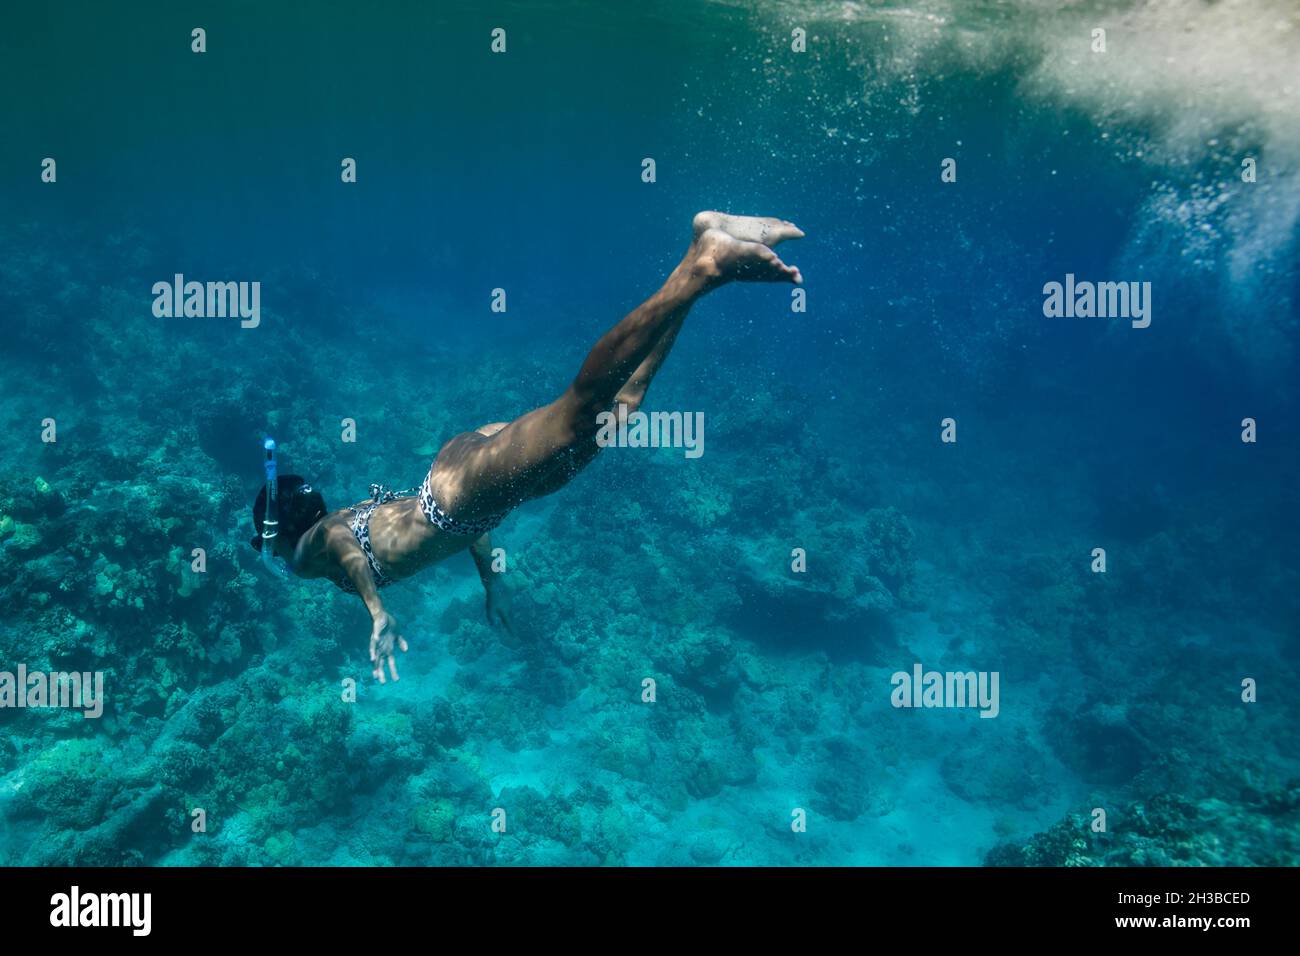 Le donne nuotano sott'acqua nelle acque blu hawaiane Foto Stock